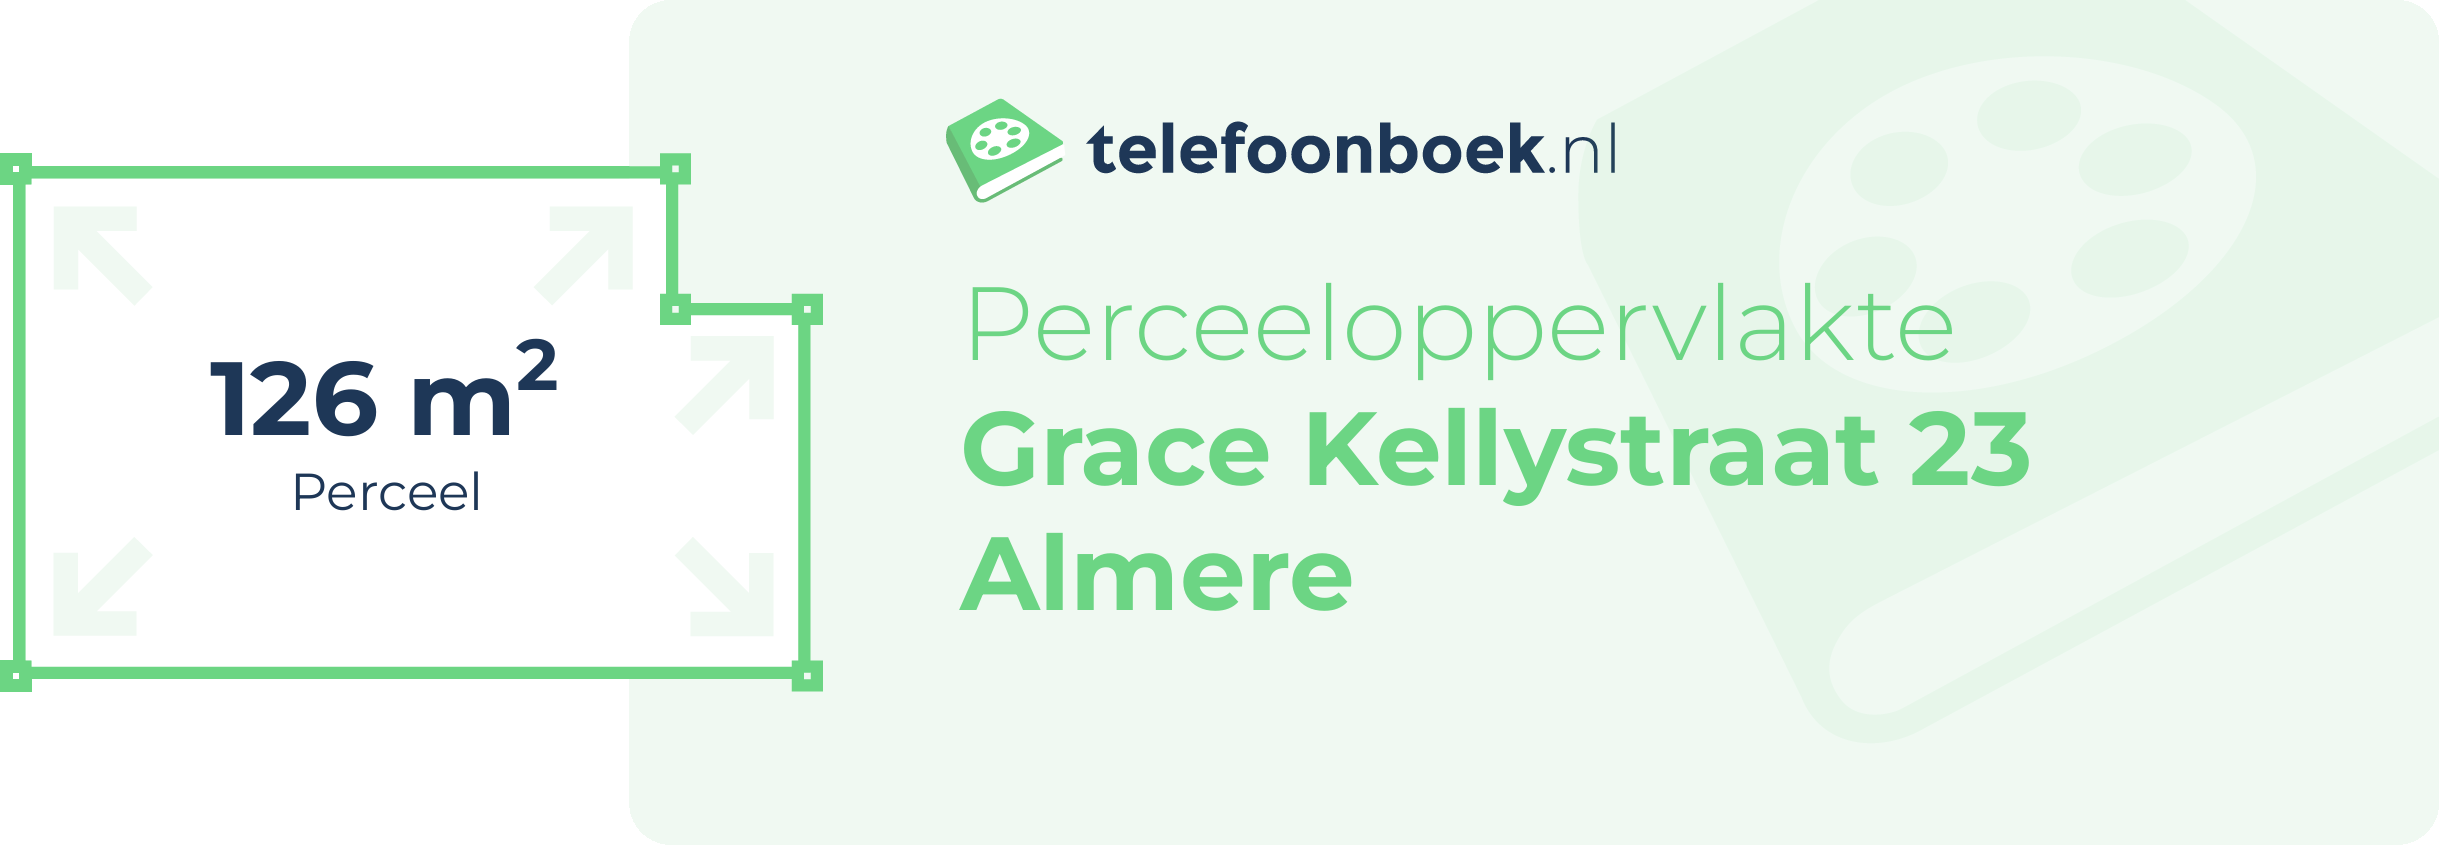 Perceeloppervlakte Grace Kellystraat 23 Almere